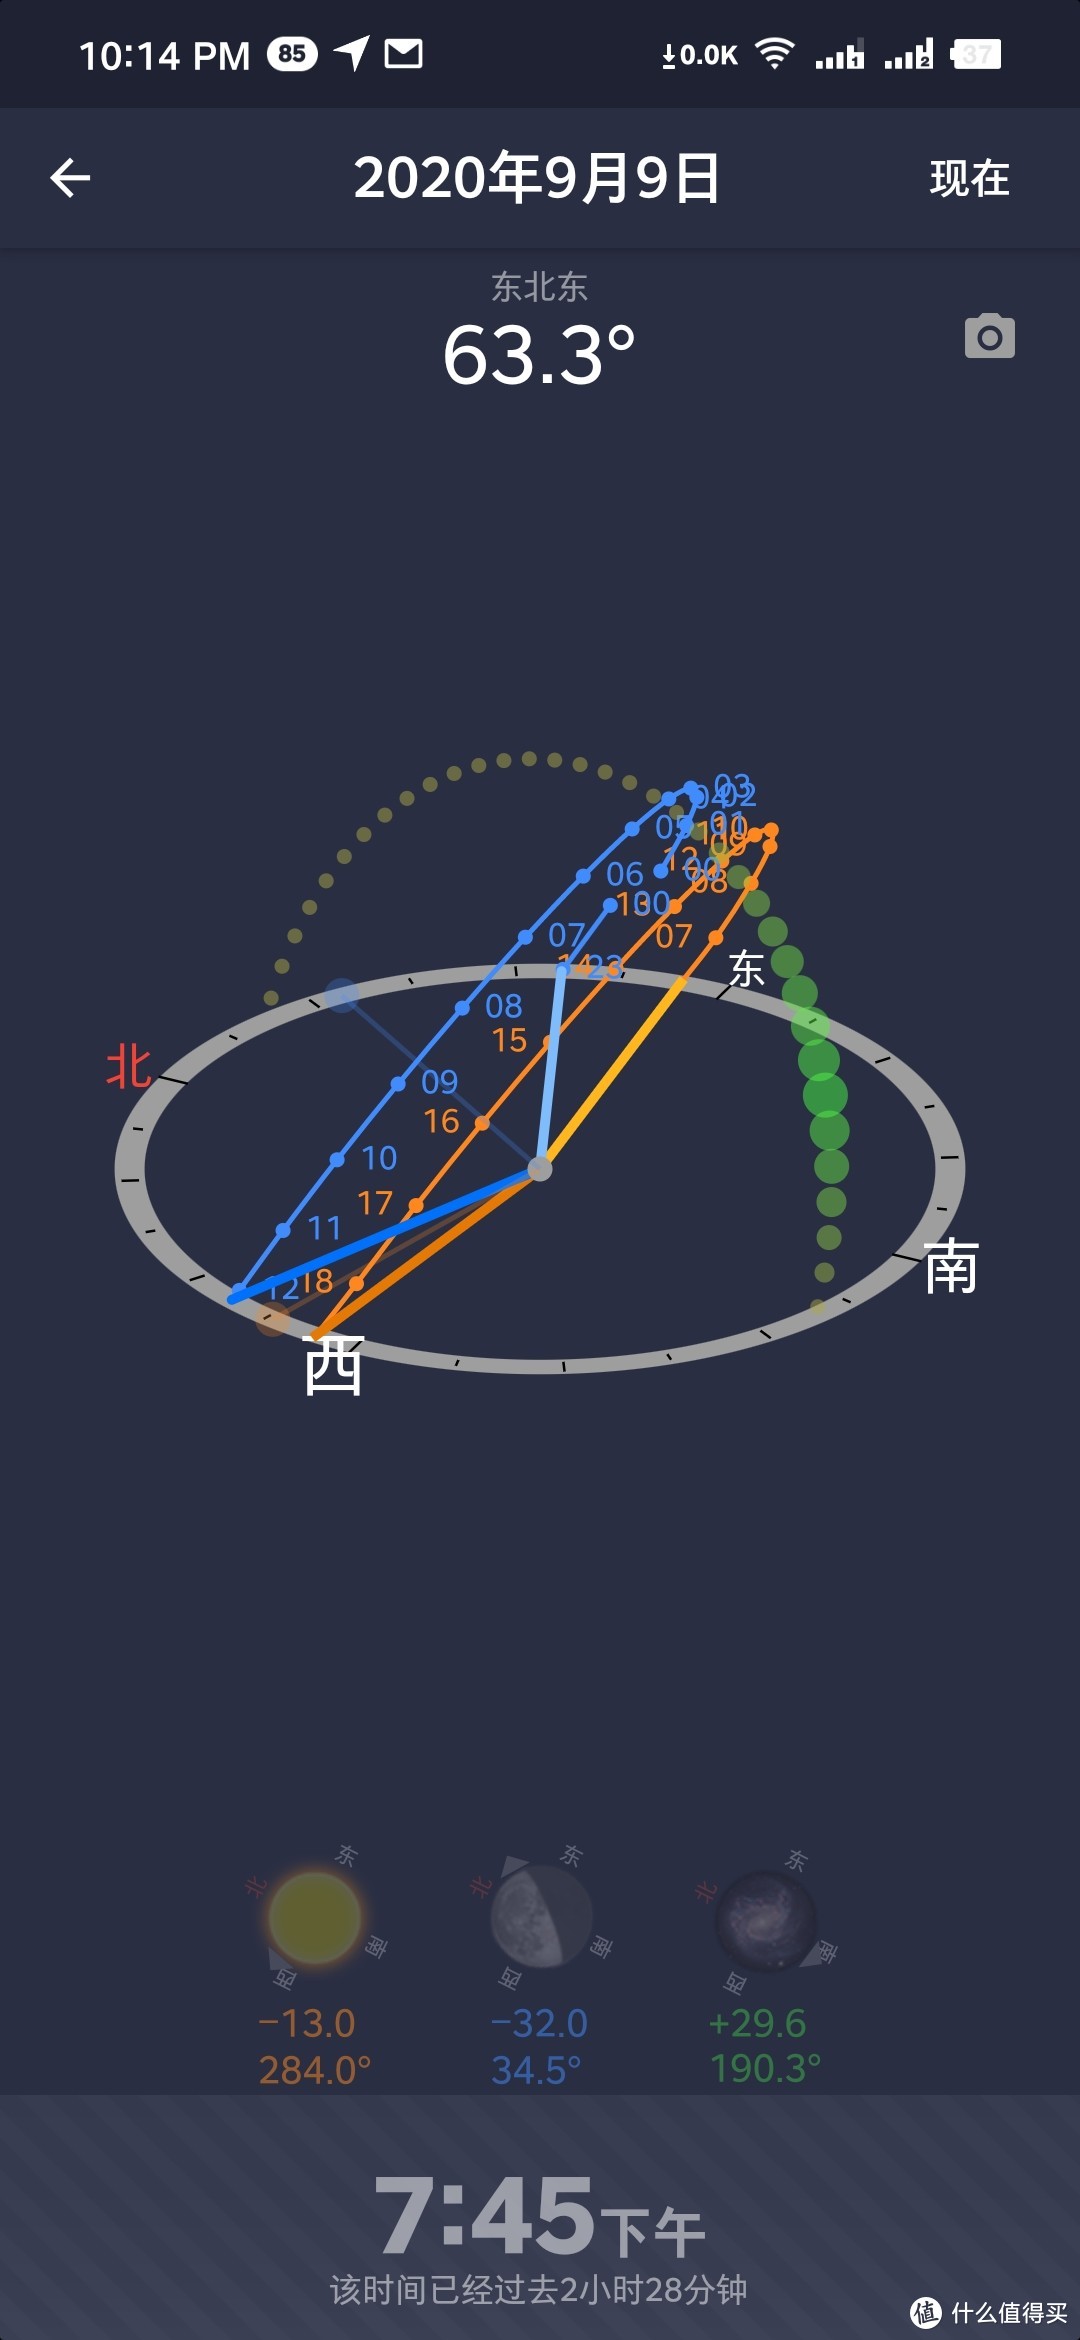 图中橙色的轨迹代表太阳的移动路线，蓝色代表月亮，绿色的一串小点点代表银河银心的位置，屏幕左划和右划可以调节时间，看到处于该时间时各天体的位置和角度